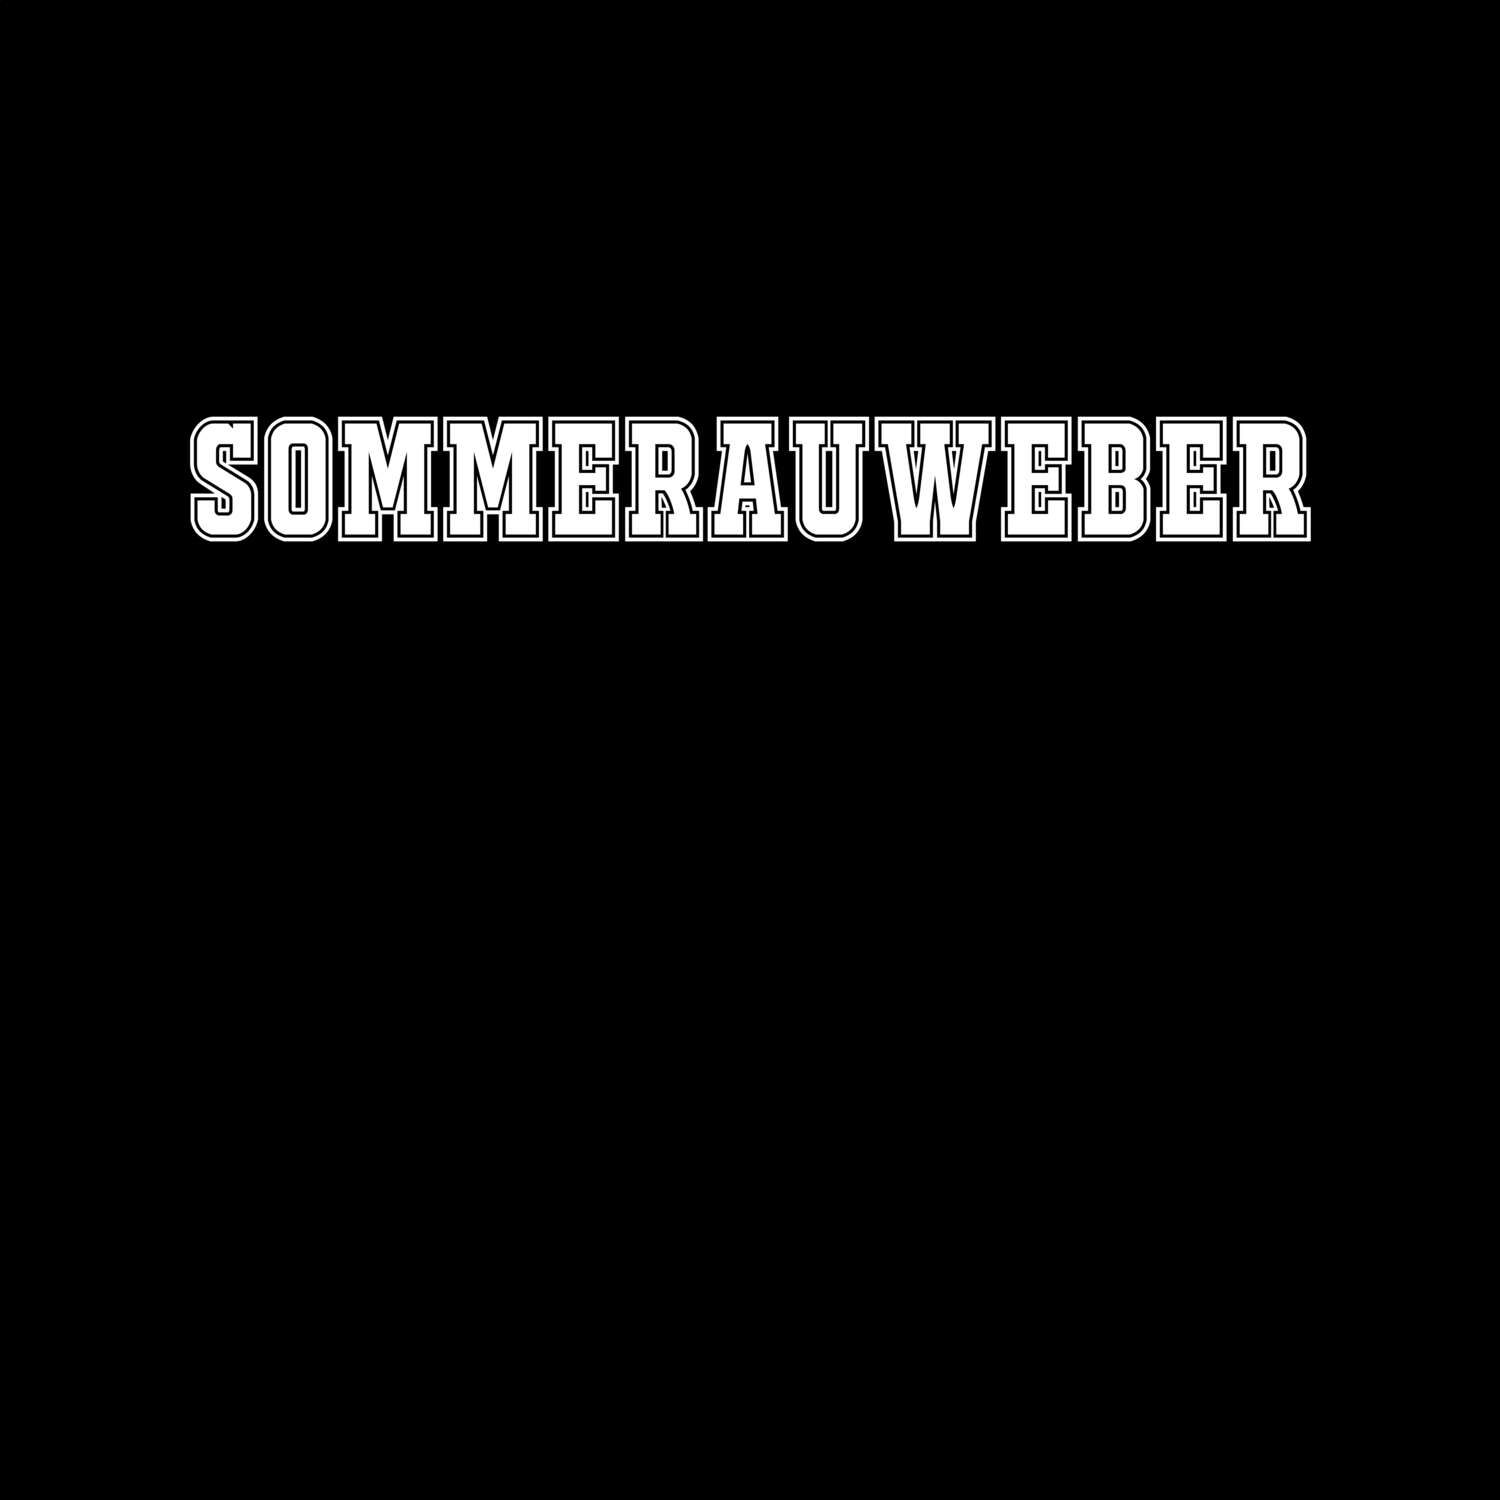 Sommerauweber T-Shirt »Classic«